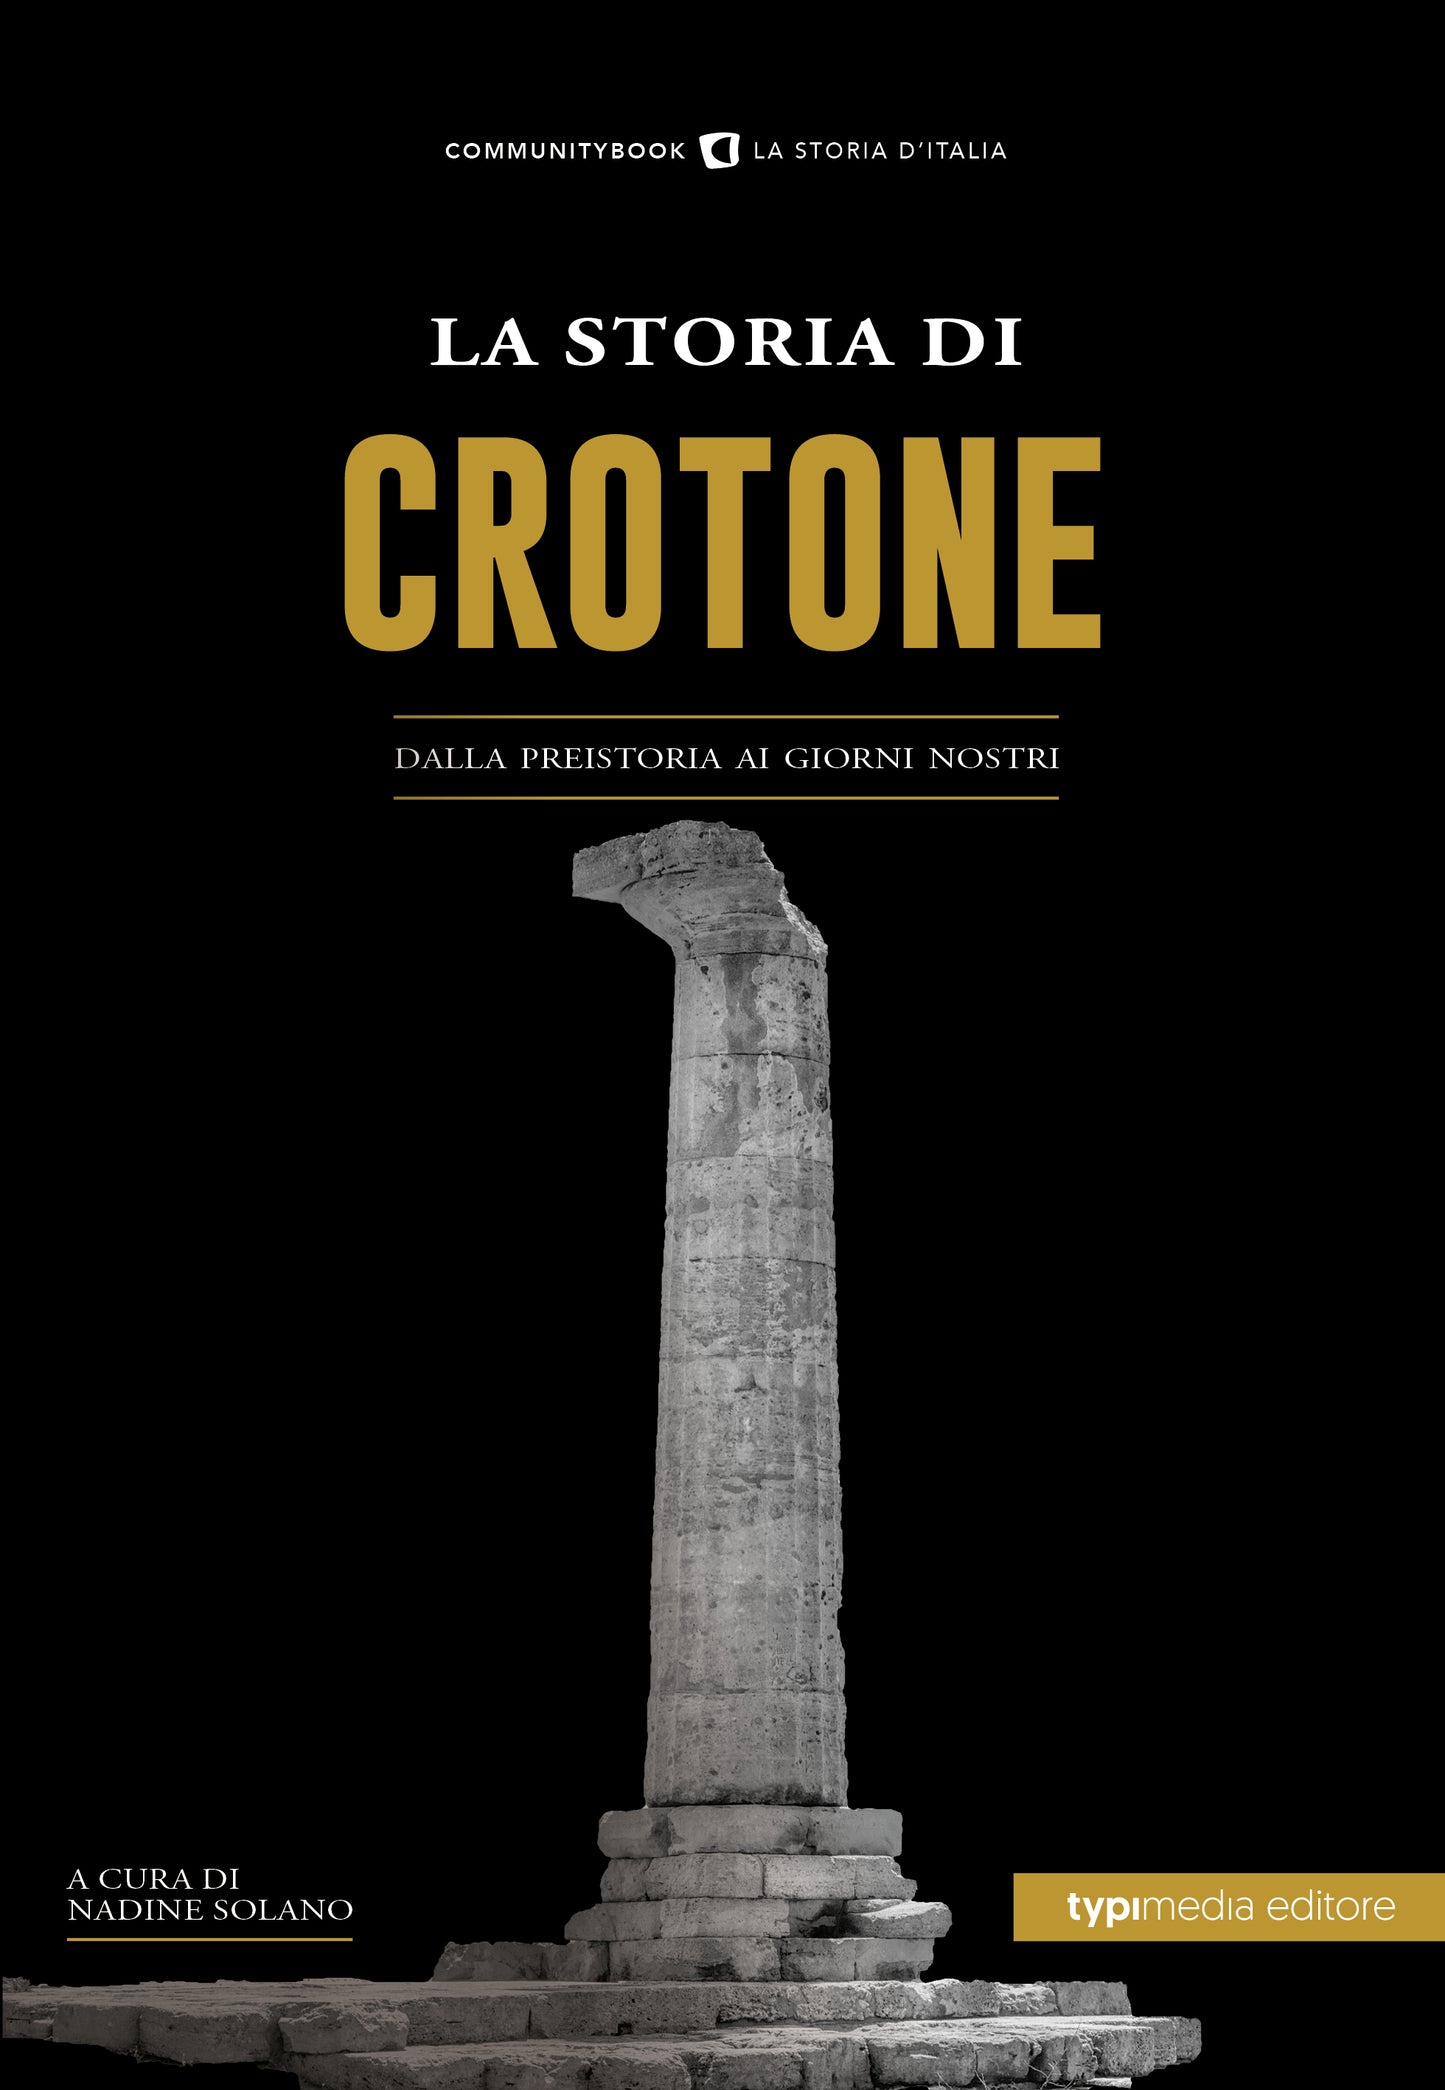 La Storia di Crotone